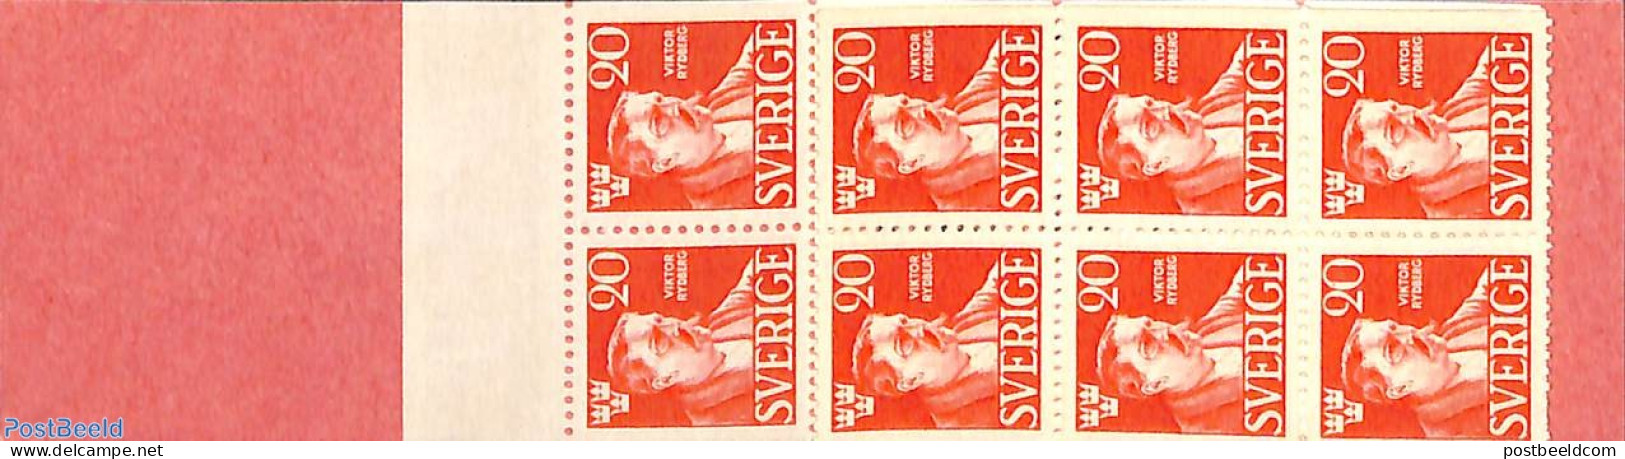 Sweden 1945 Viktor Rydberg Booklet, Mint NH, Stamp Booklets - Art - Authors - Unused Stamps